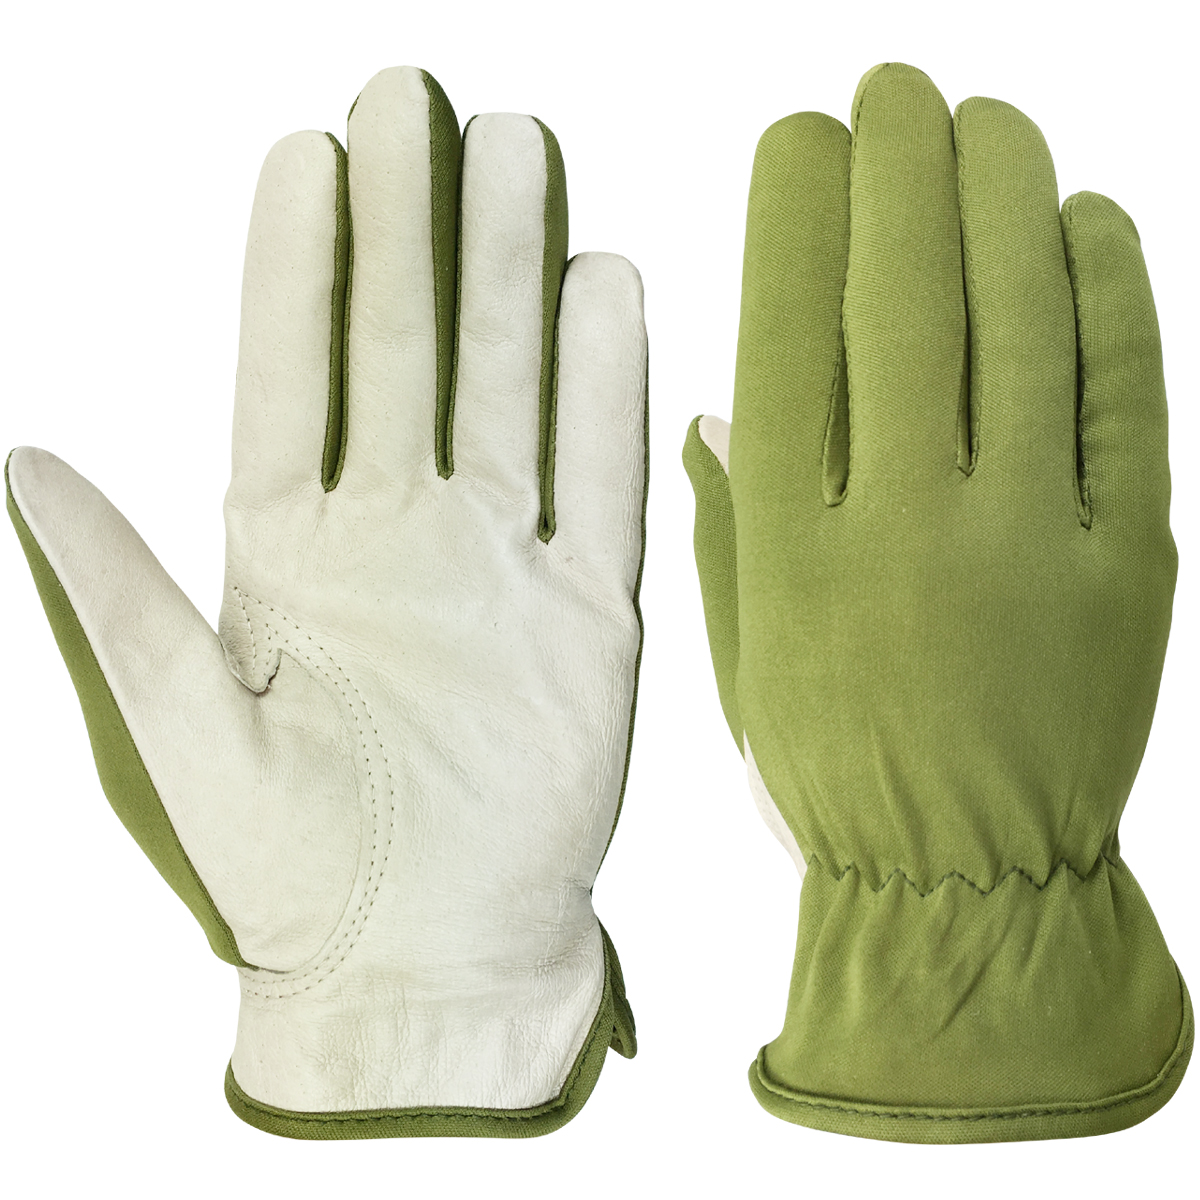 エースライナー 10双組 AG620 | ACE 作業用革手袋・作業用手袋のエース